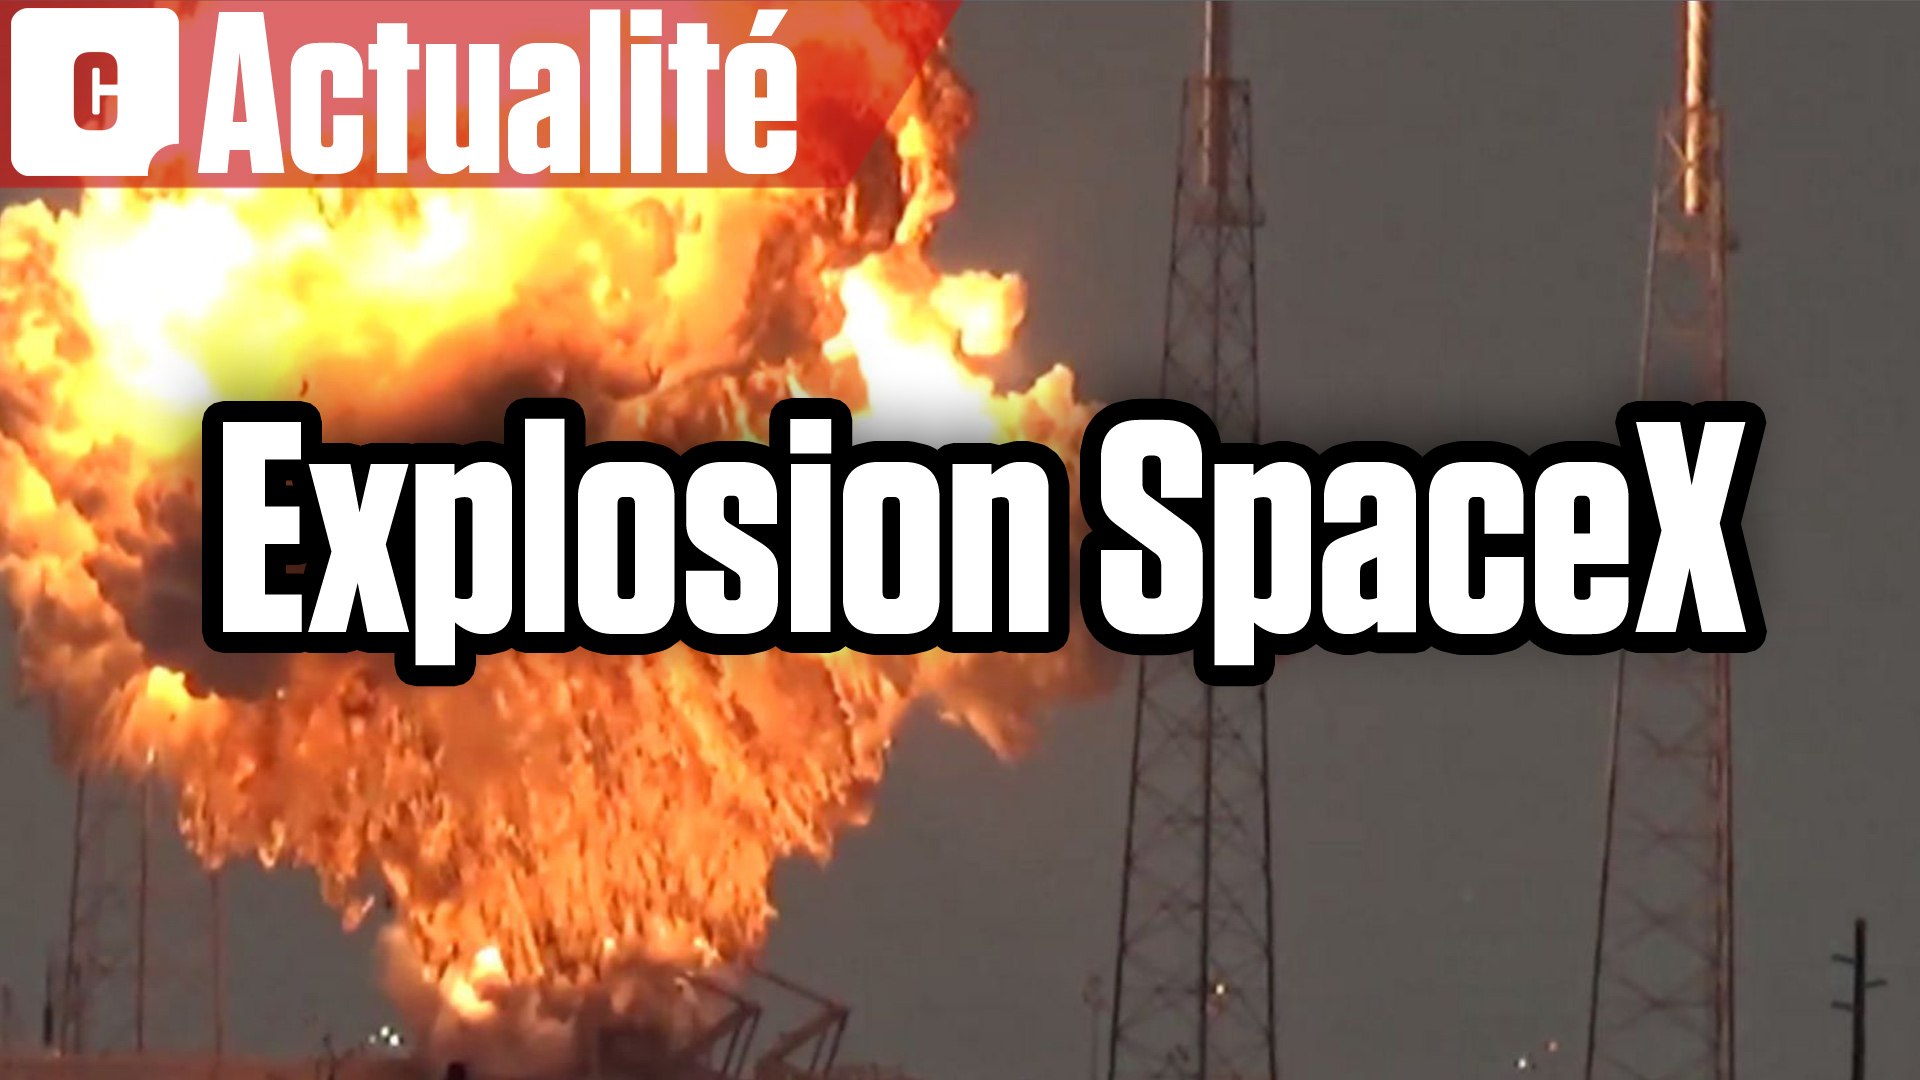 SpaceX : explosion du satellite de Facebook